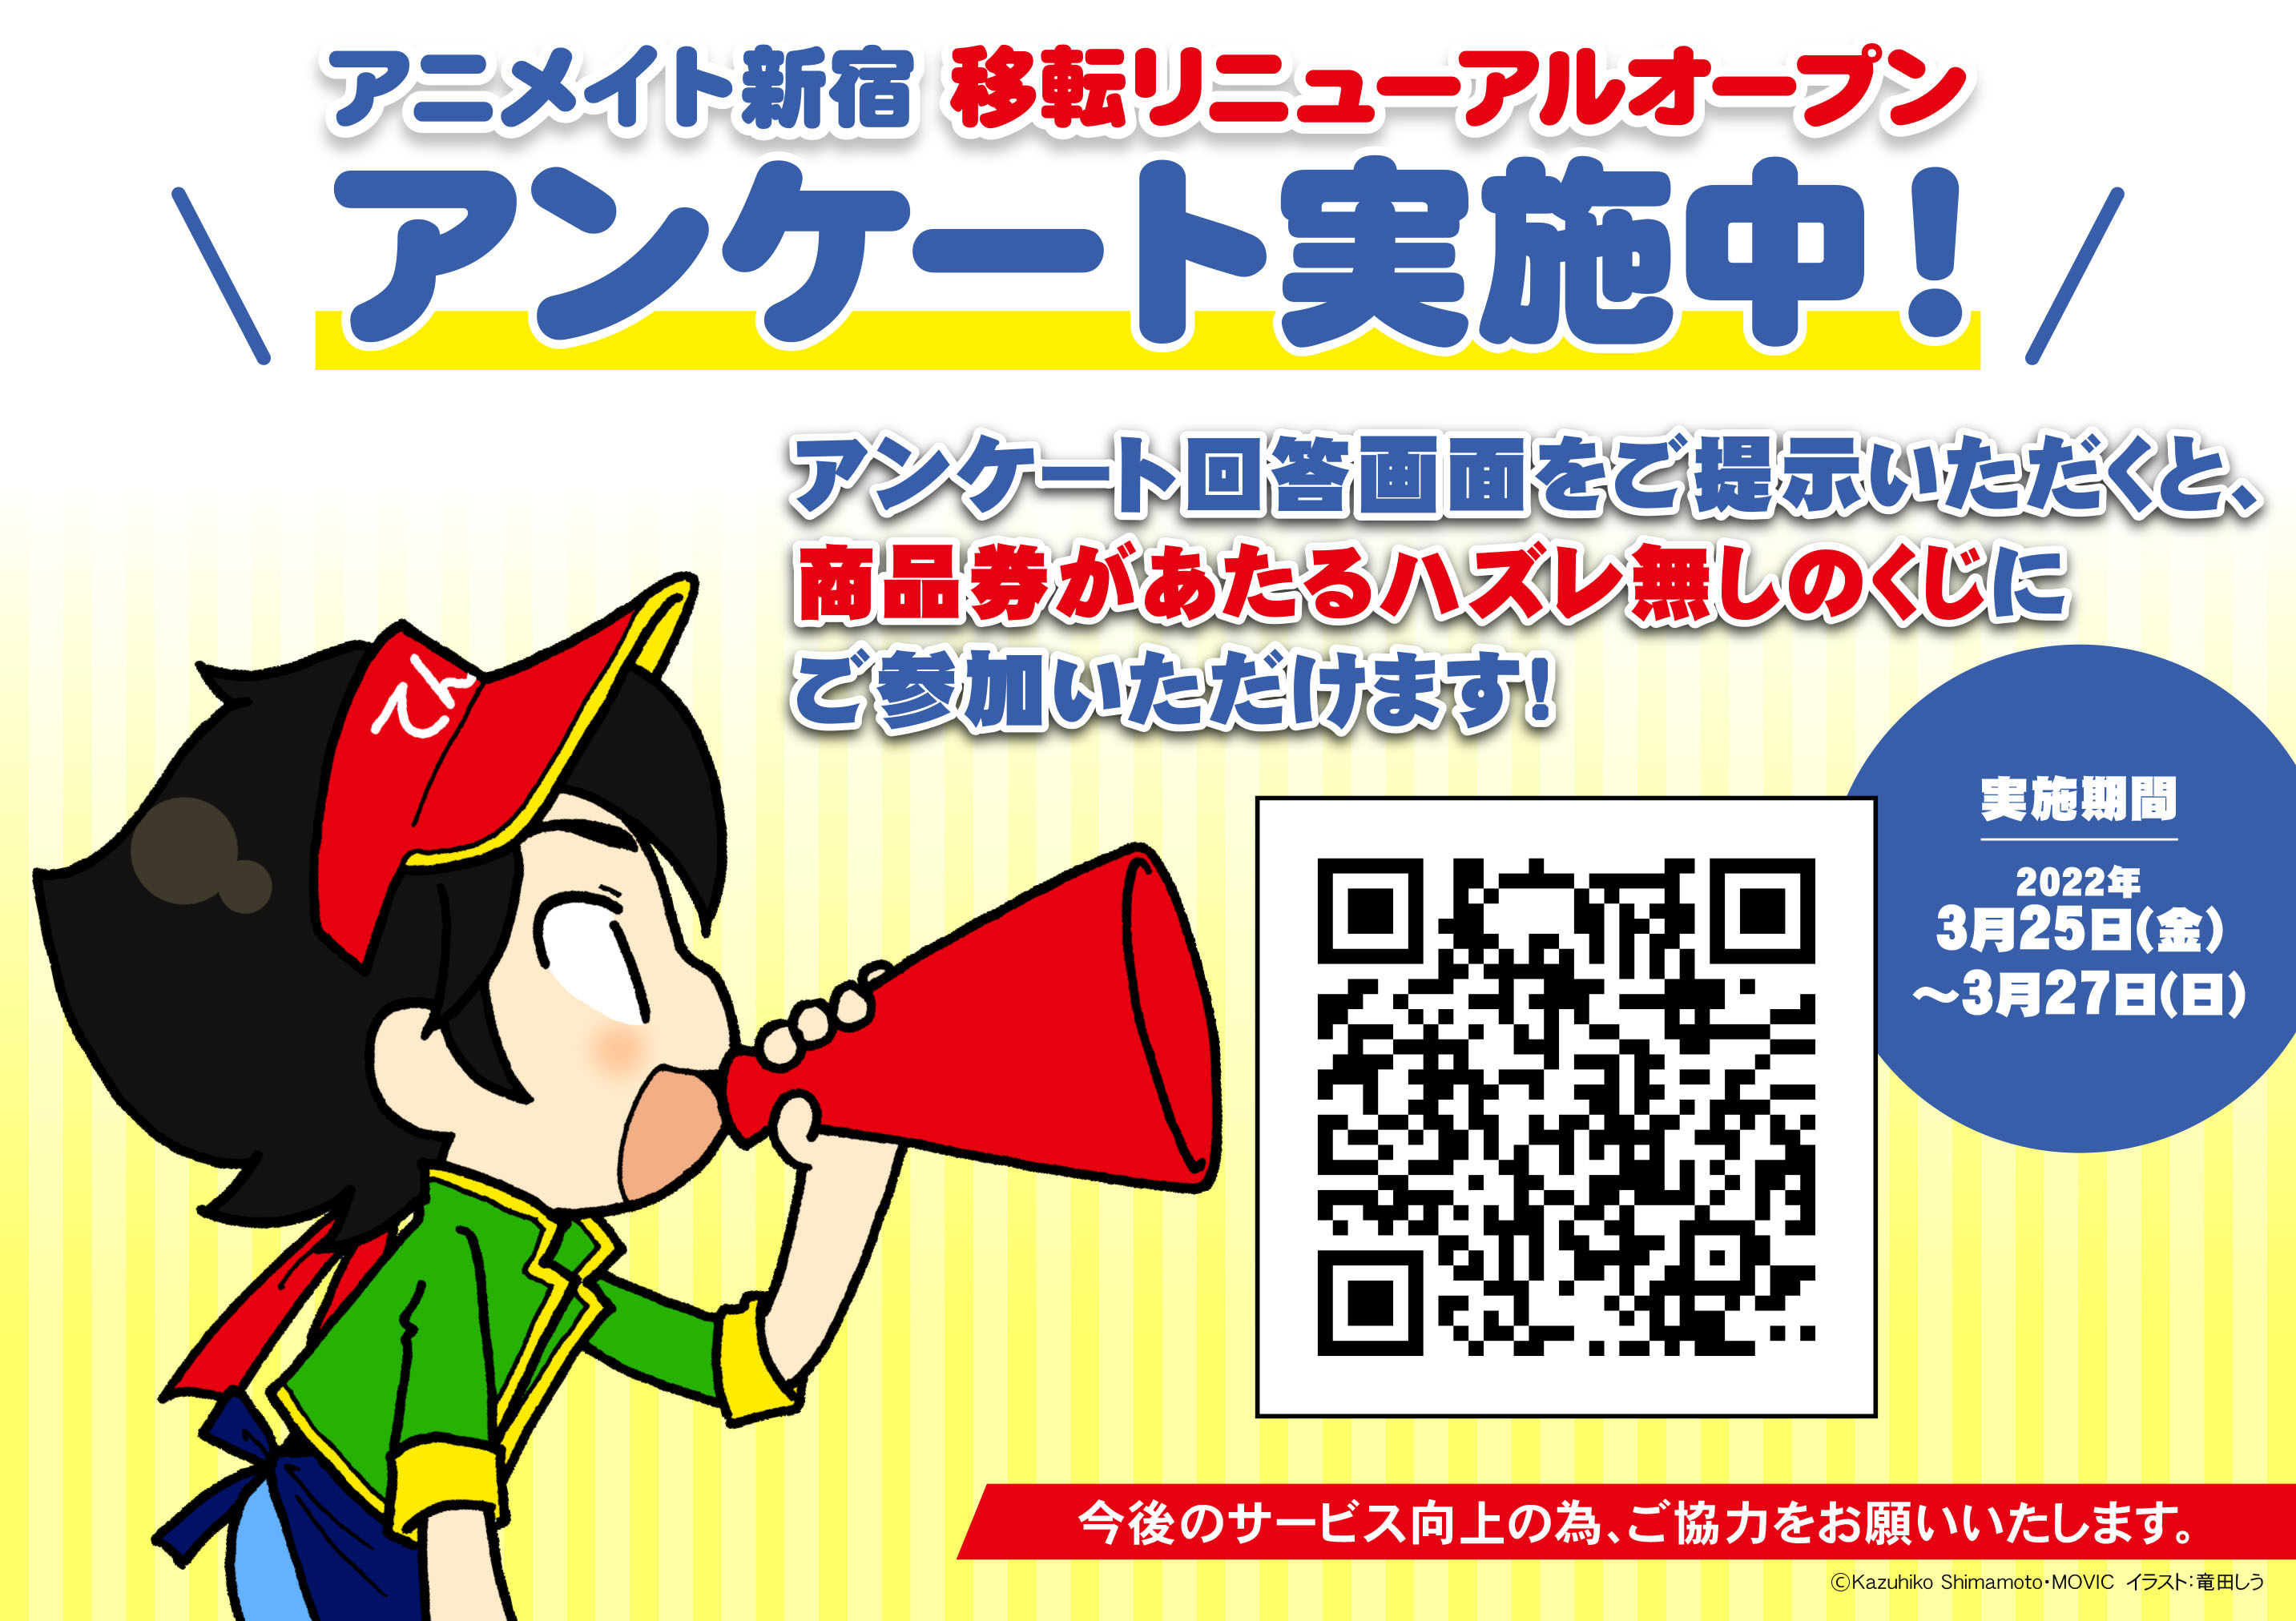 アニメイト商品券が当たる アニメイトアプリ会員登録キャンペーン 実施 アニメイト新宿